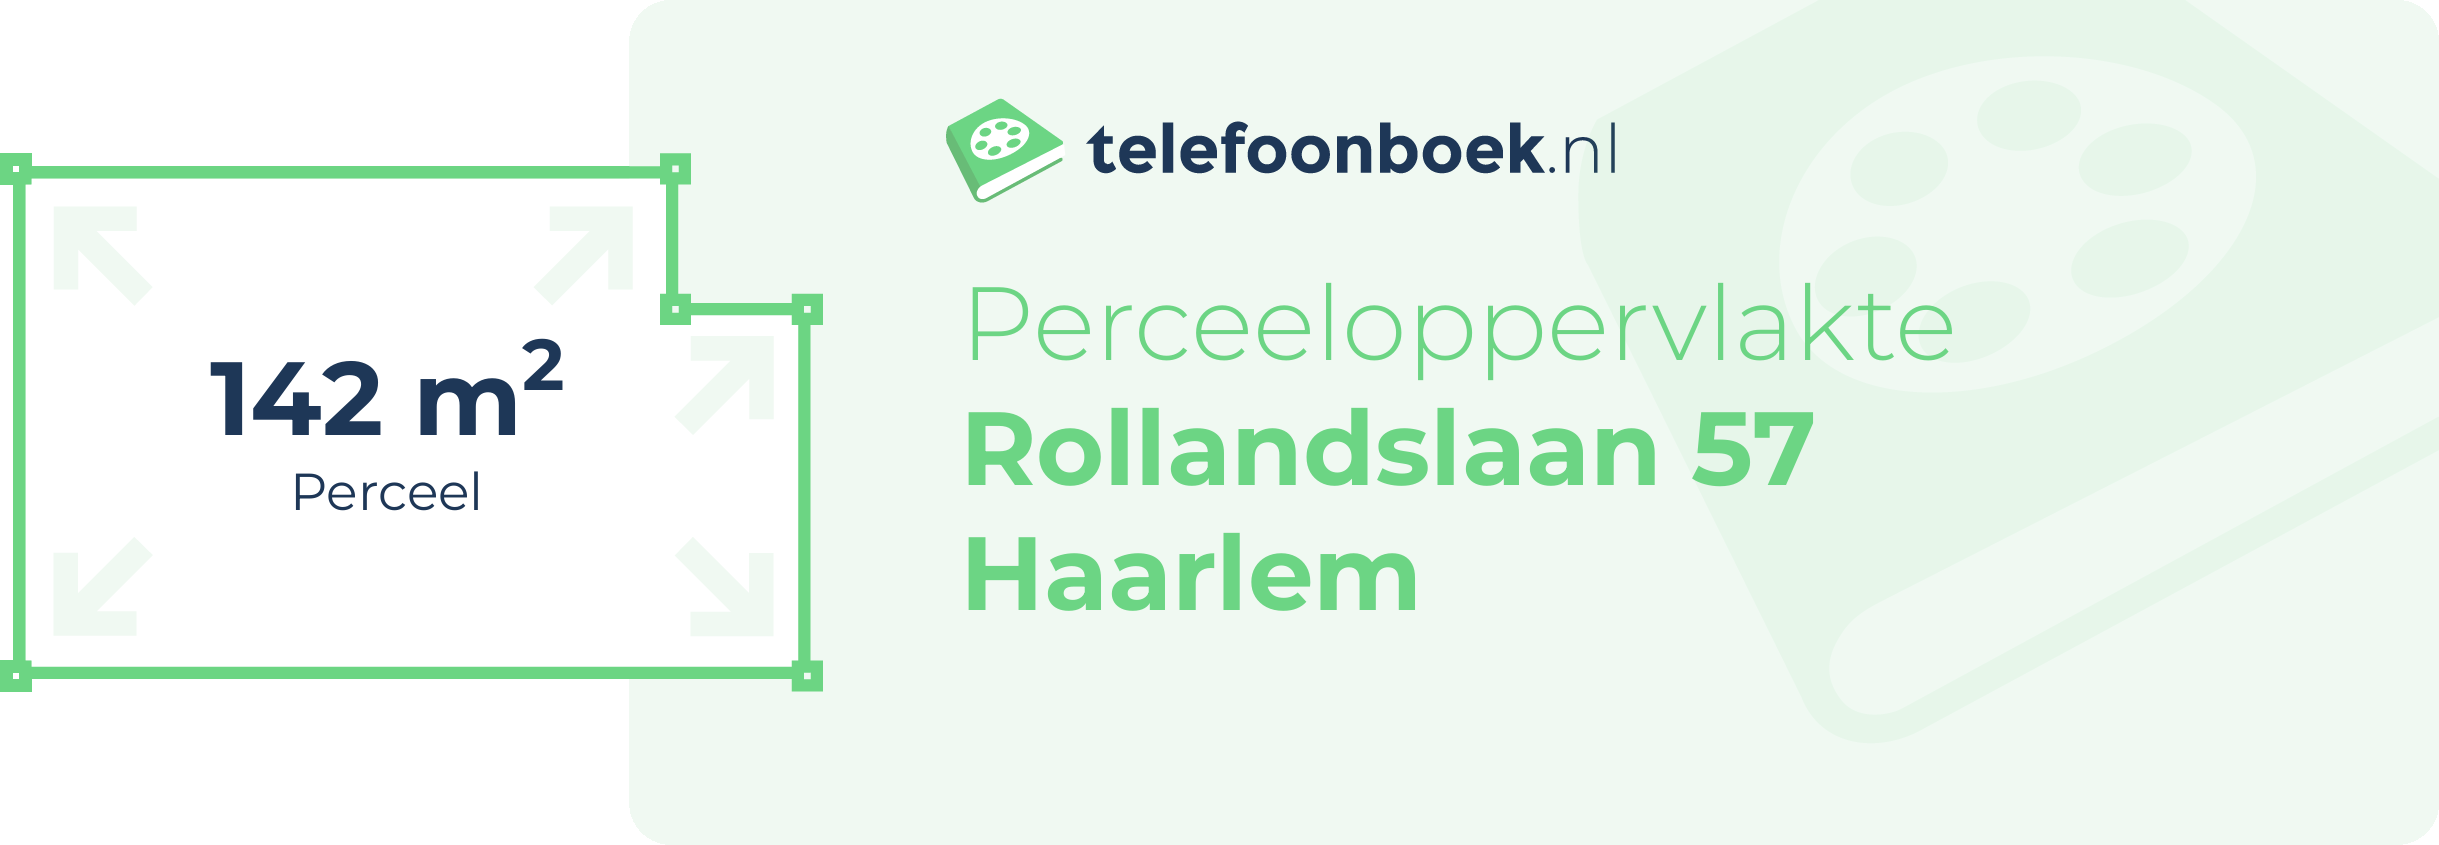 Perceeloppervlakte Rollandslaan 57 Haarlem